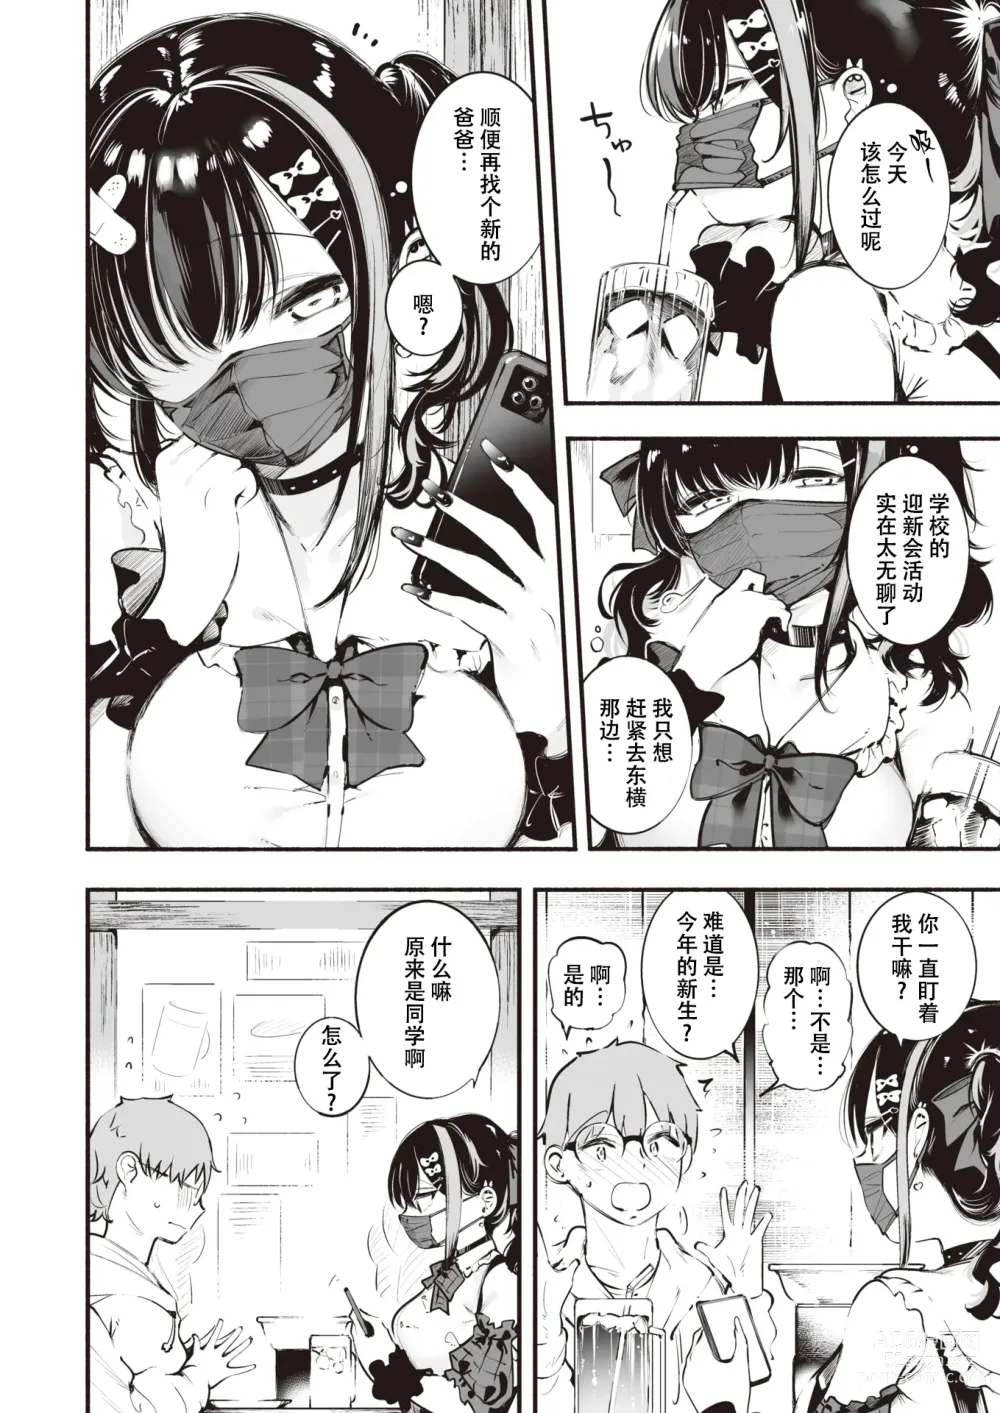 Page 2 of manga 地雷ちゃんは愛を知る